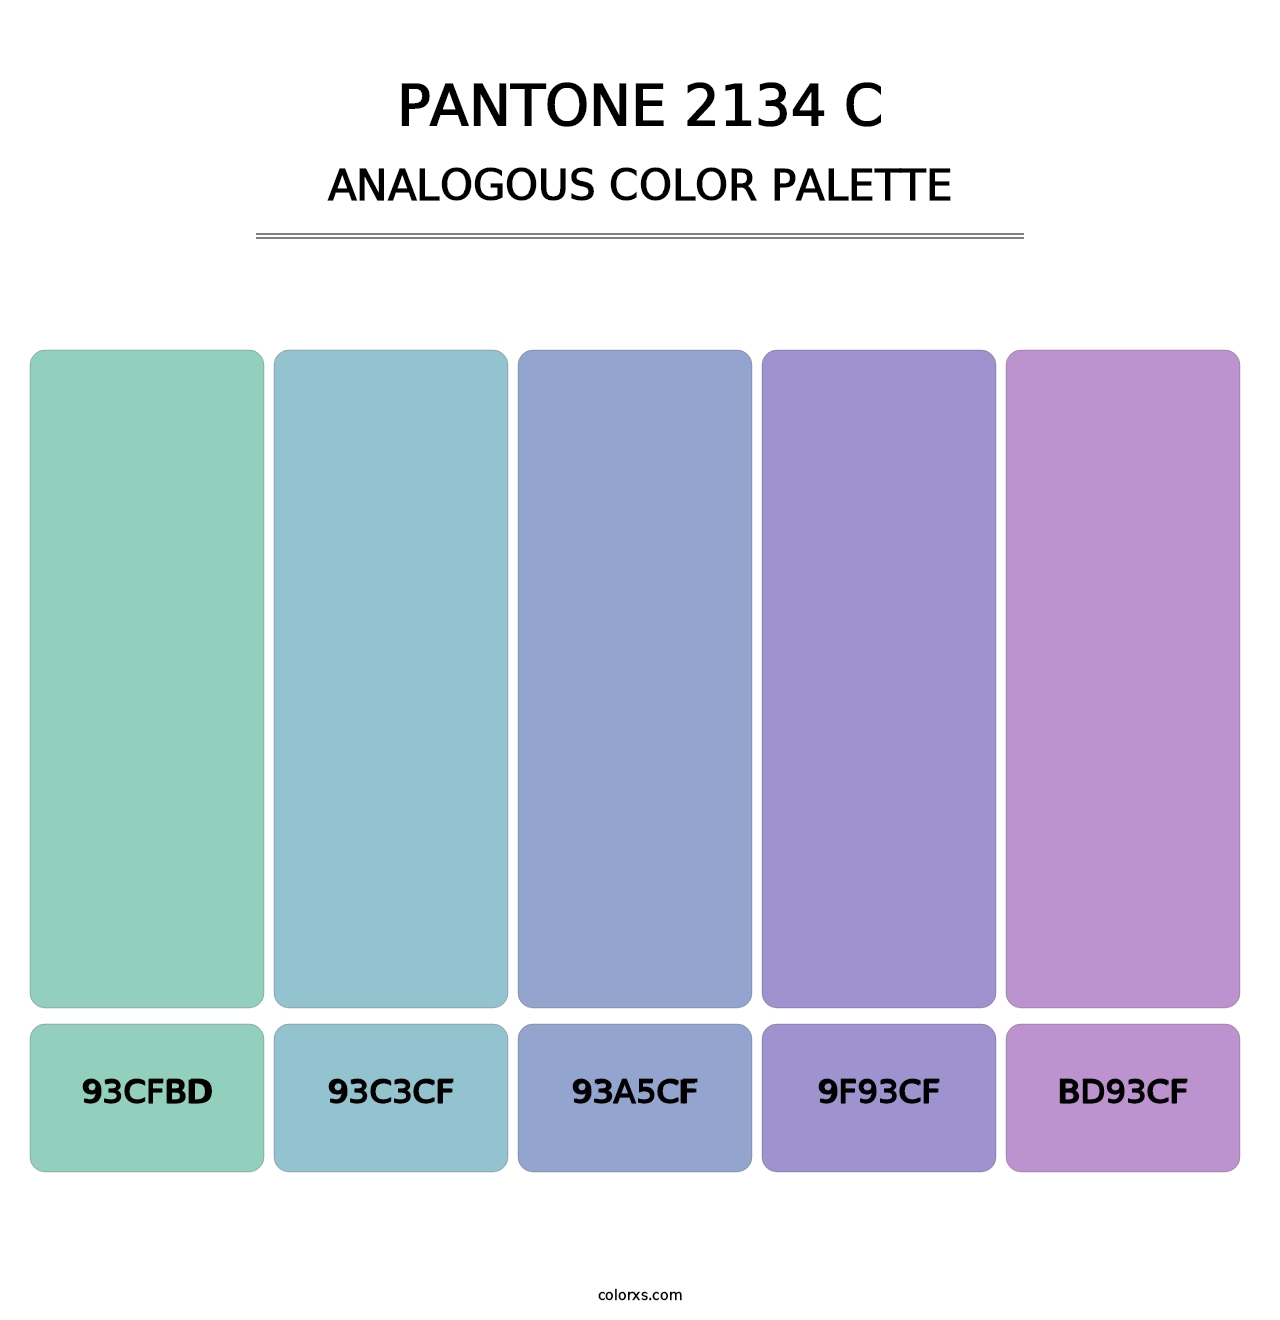 PANTONE 2134 C - Analogous Color Palette